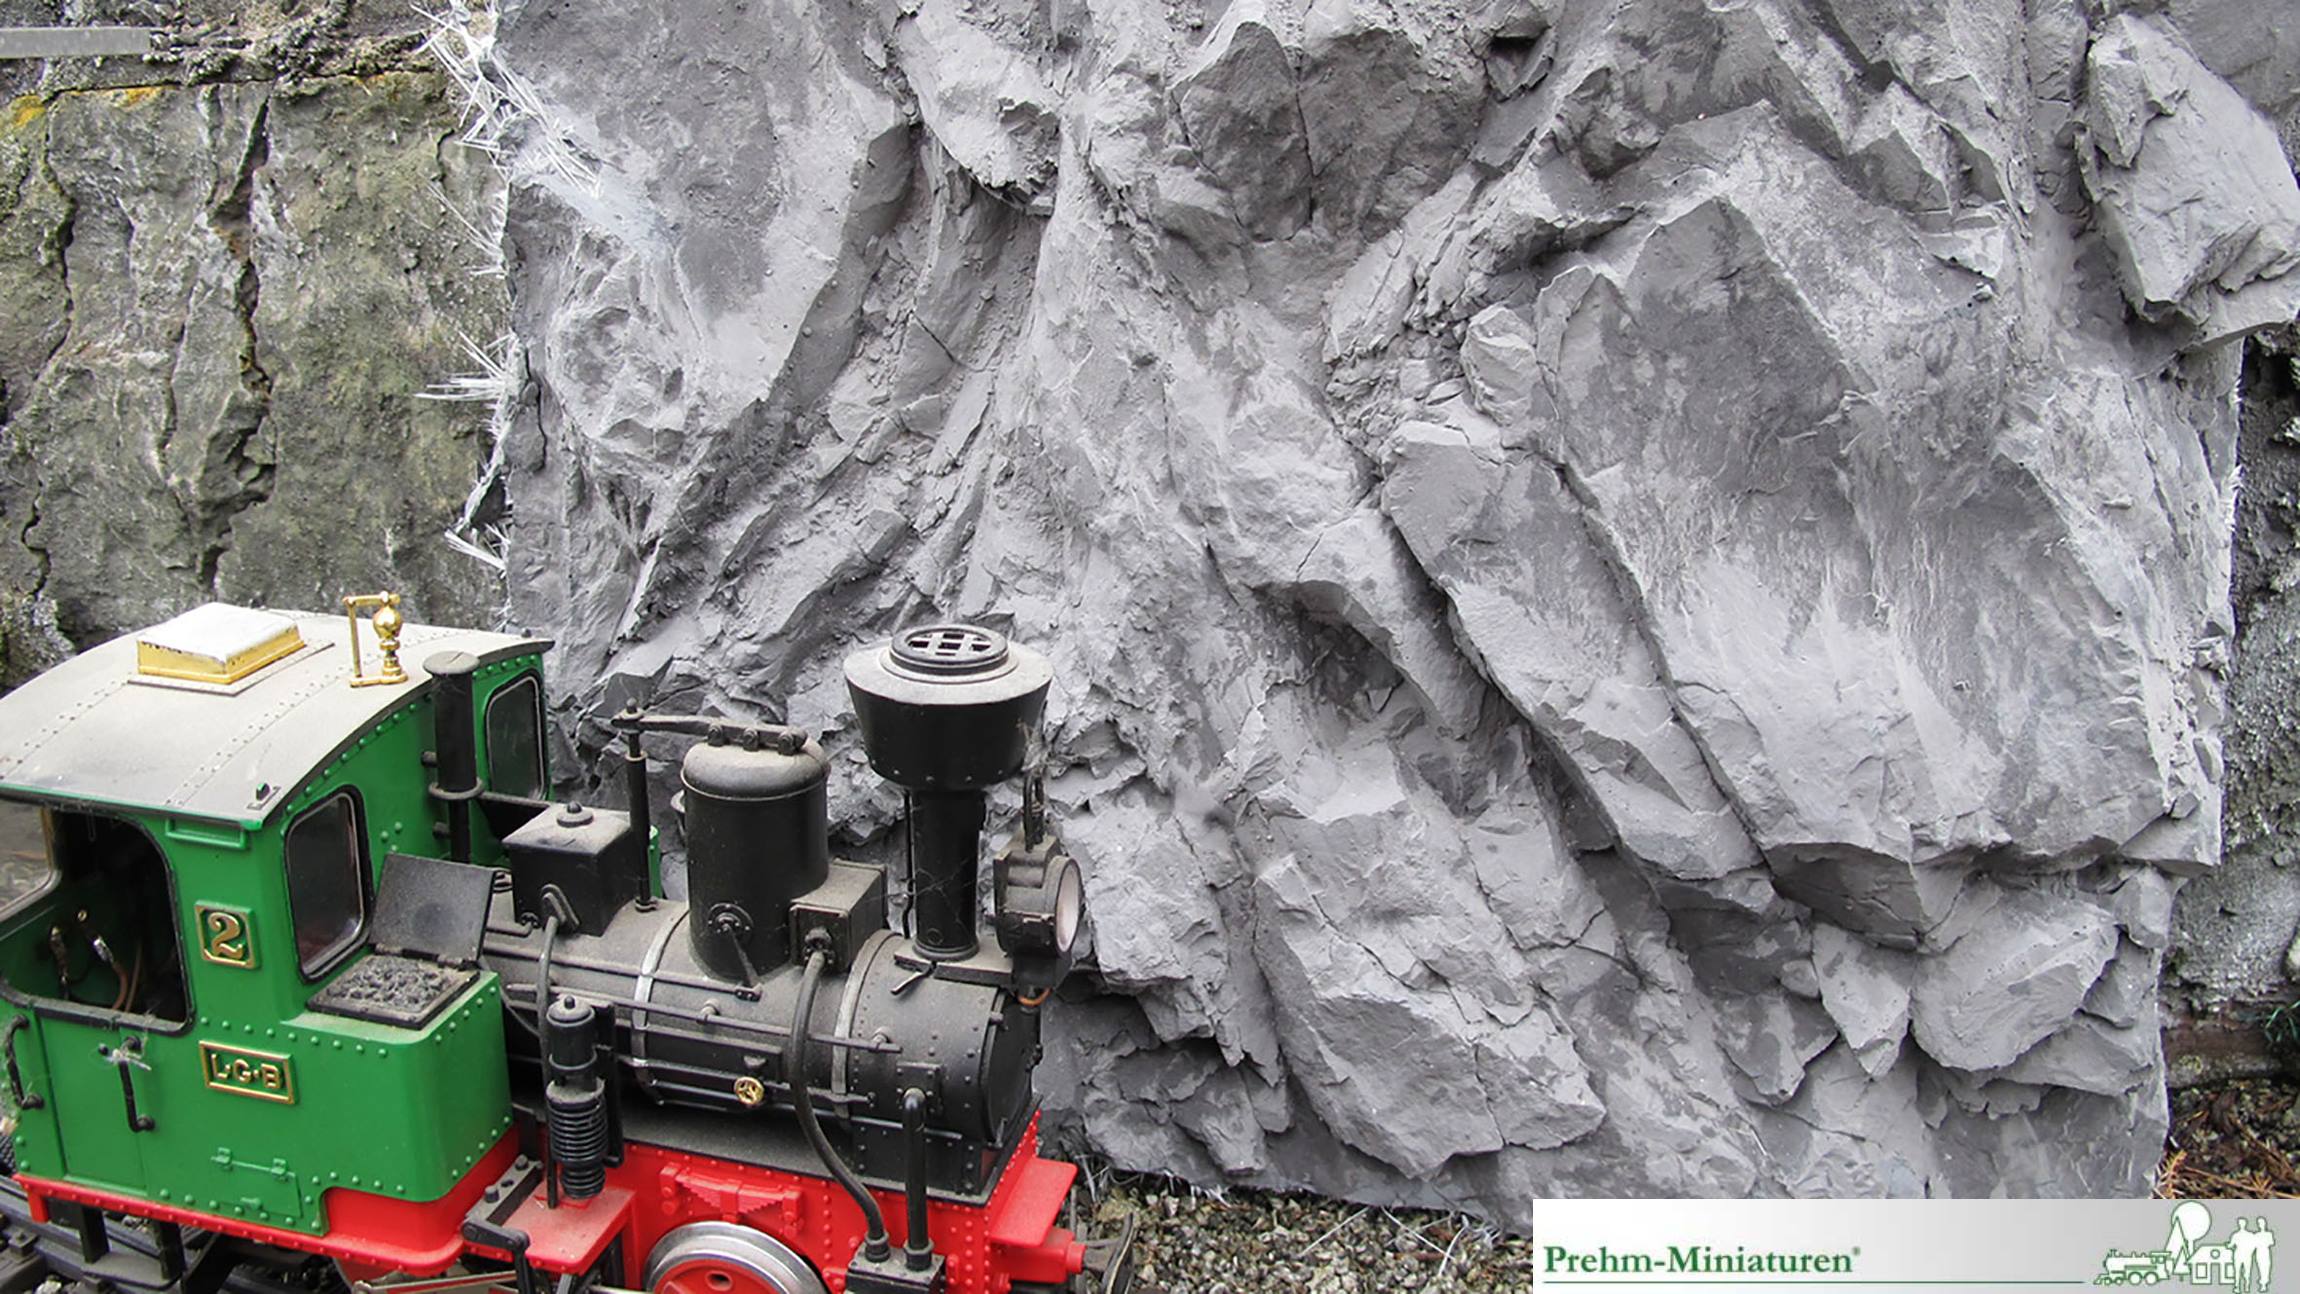 Ab 2019 bietet Prehm-Miniaturen eine weitere Komponente zum einfachen Bau von Felsen und Gebirge auf der Gartenbahn. Ob 30 cm oder 3 Meter hoch, mit den neuen Kunstfelsen ist der Bau von Gebirgen, Almwiesen oder Tunneleinfahrten kinderleicht.